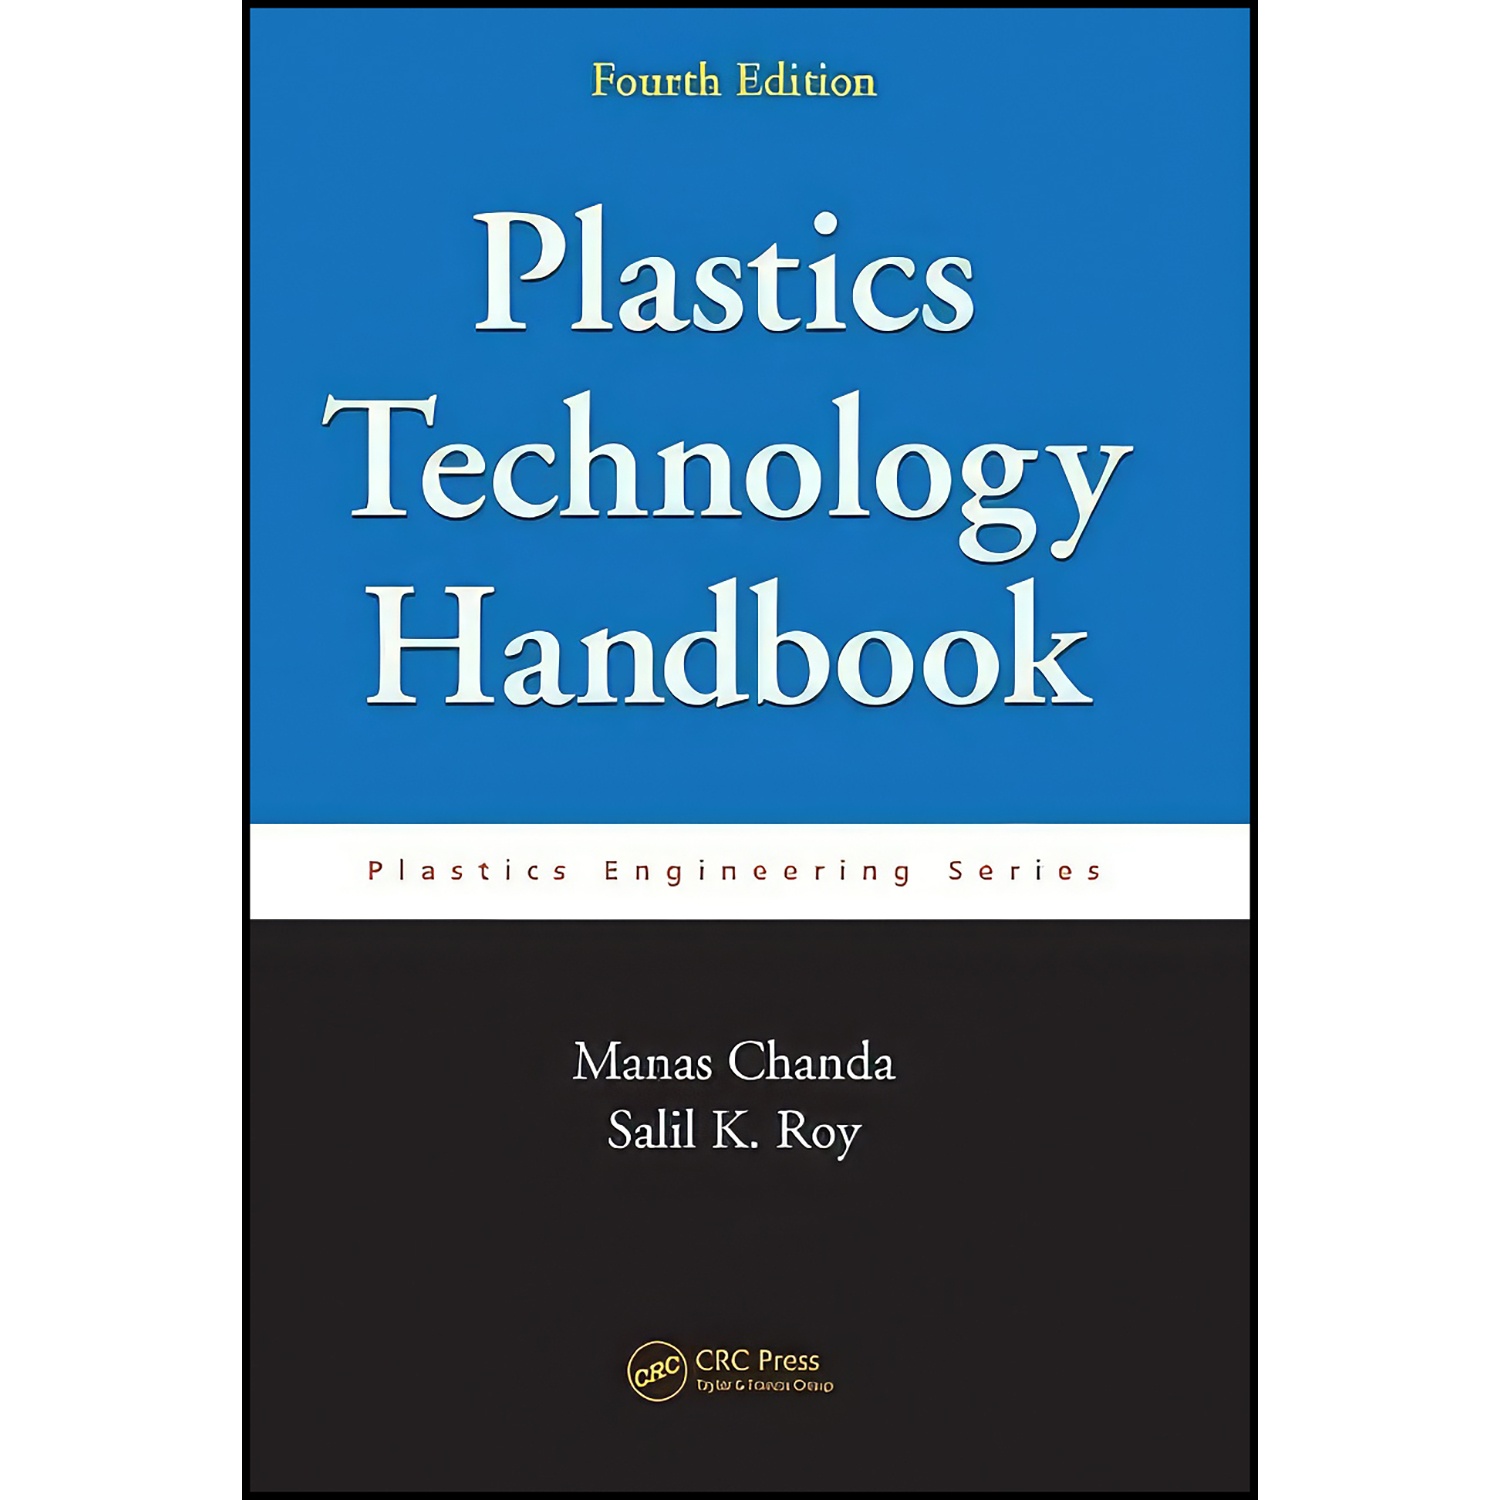 کتاب Plastics Technology Handbook, Fourth Edition اثر Manas Chanda and Salil K. Roy انتشارات CRC Press